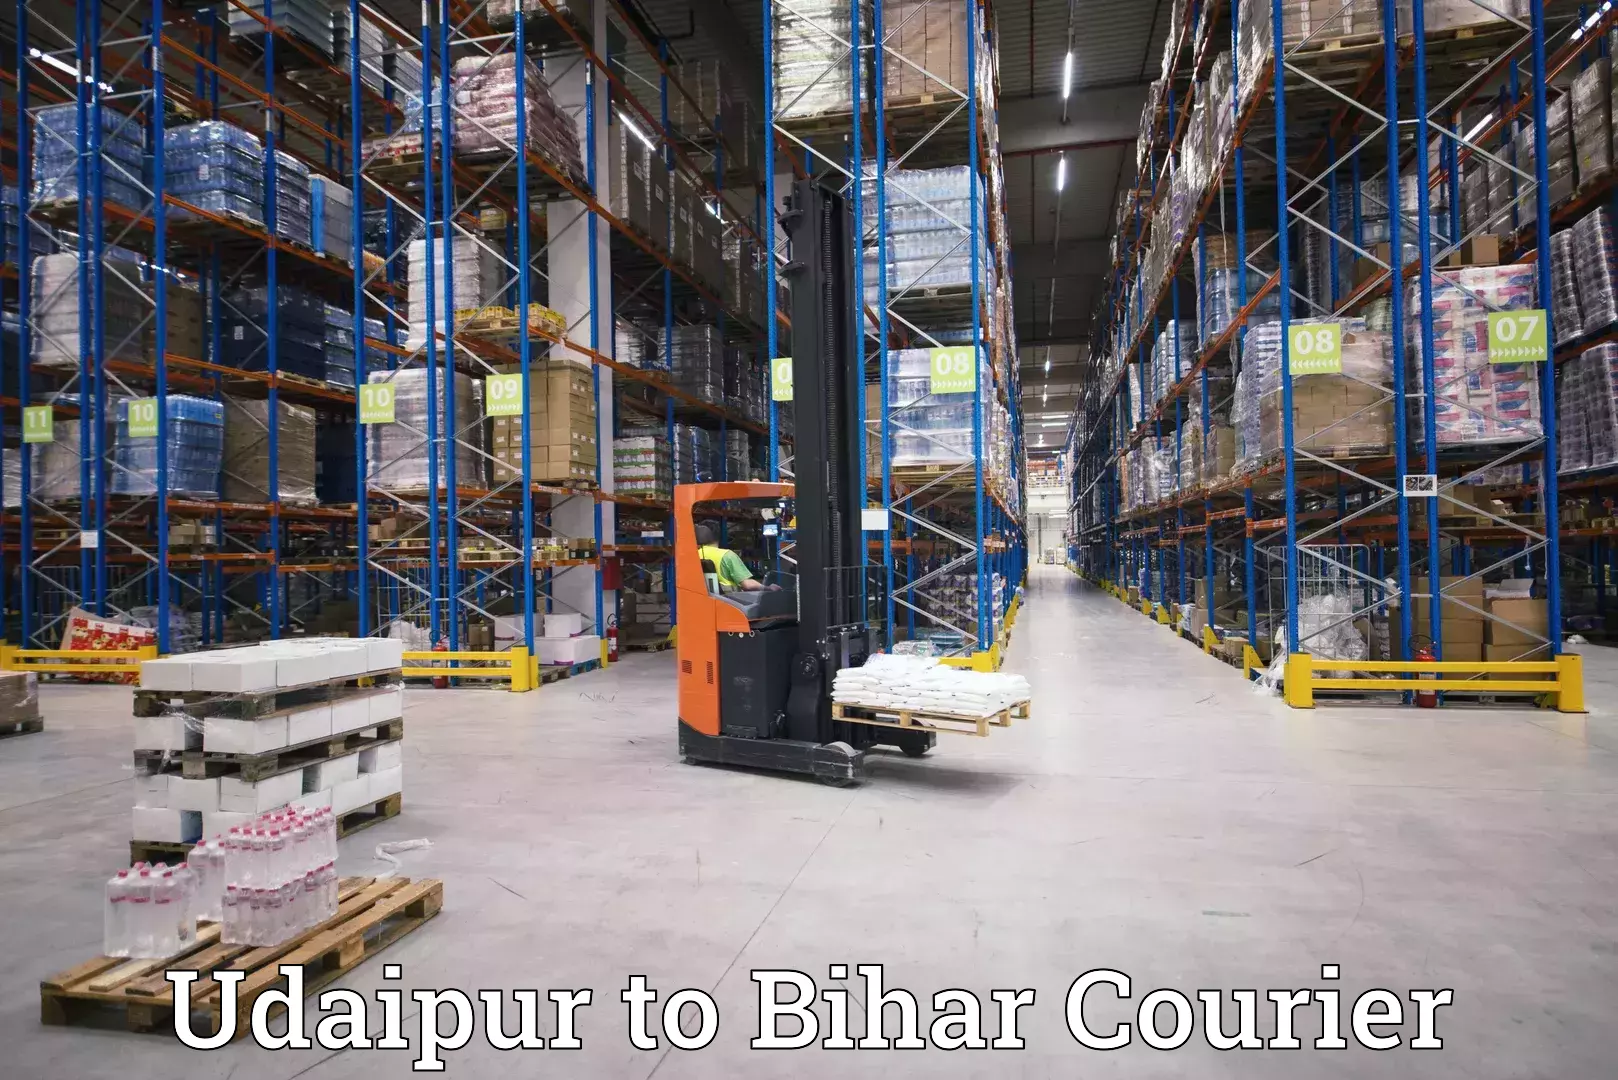 Cargo courier service Udaipur to Mairwa